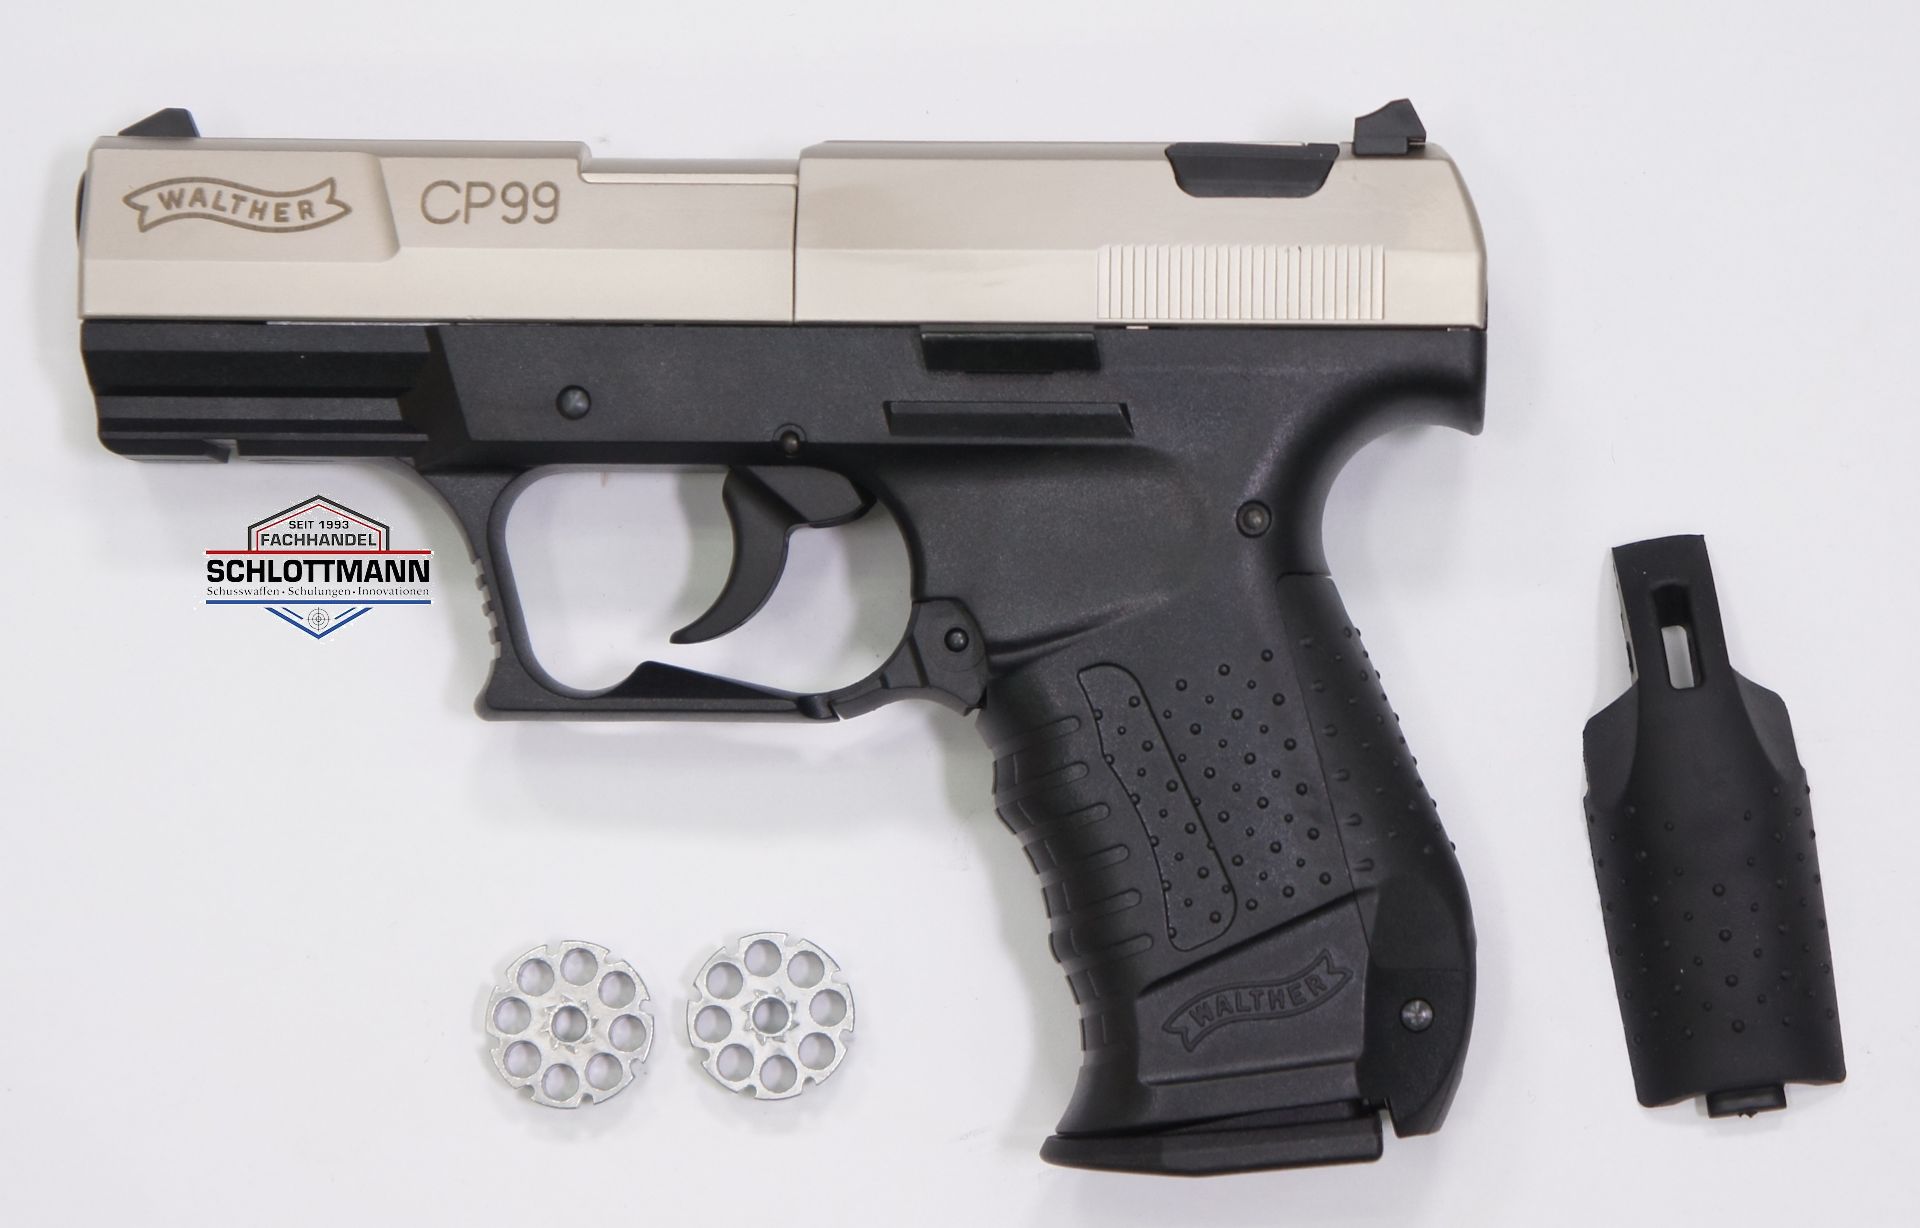 Der Griffrücken kann bei der Walther CP99 kann für größere Hände gegen einen stärkeren gewechselt werden.